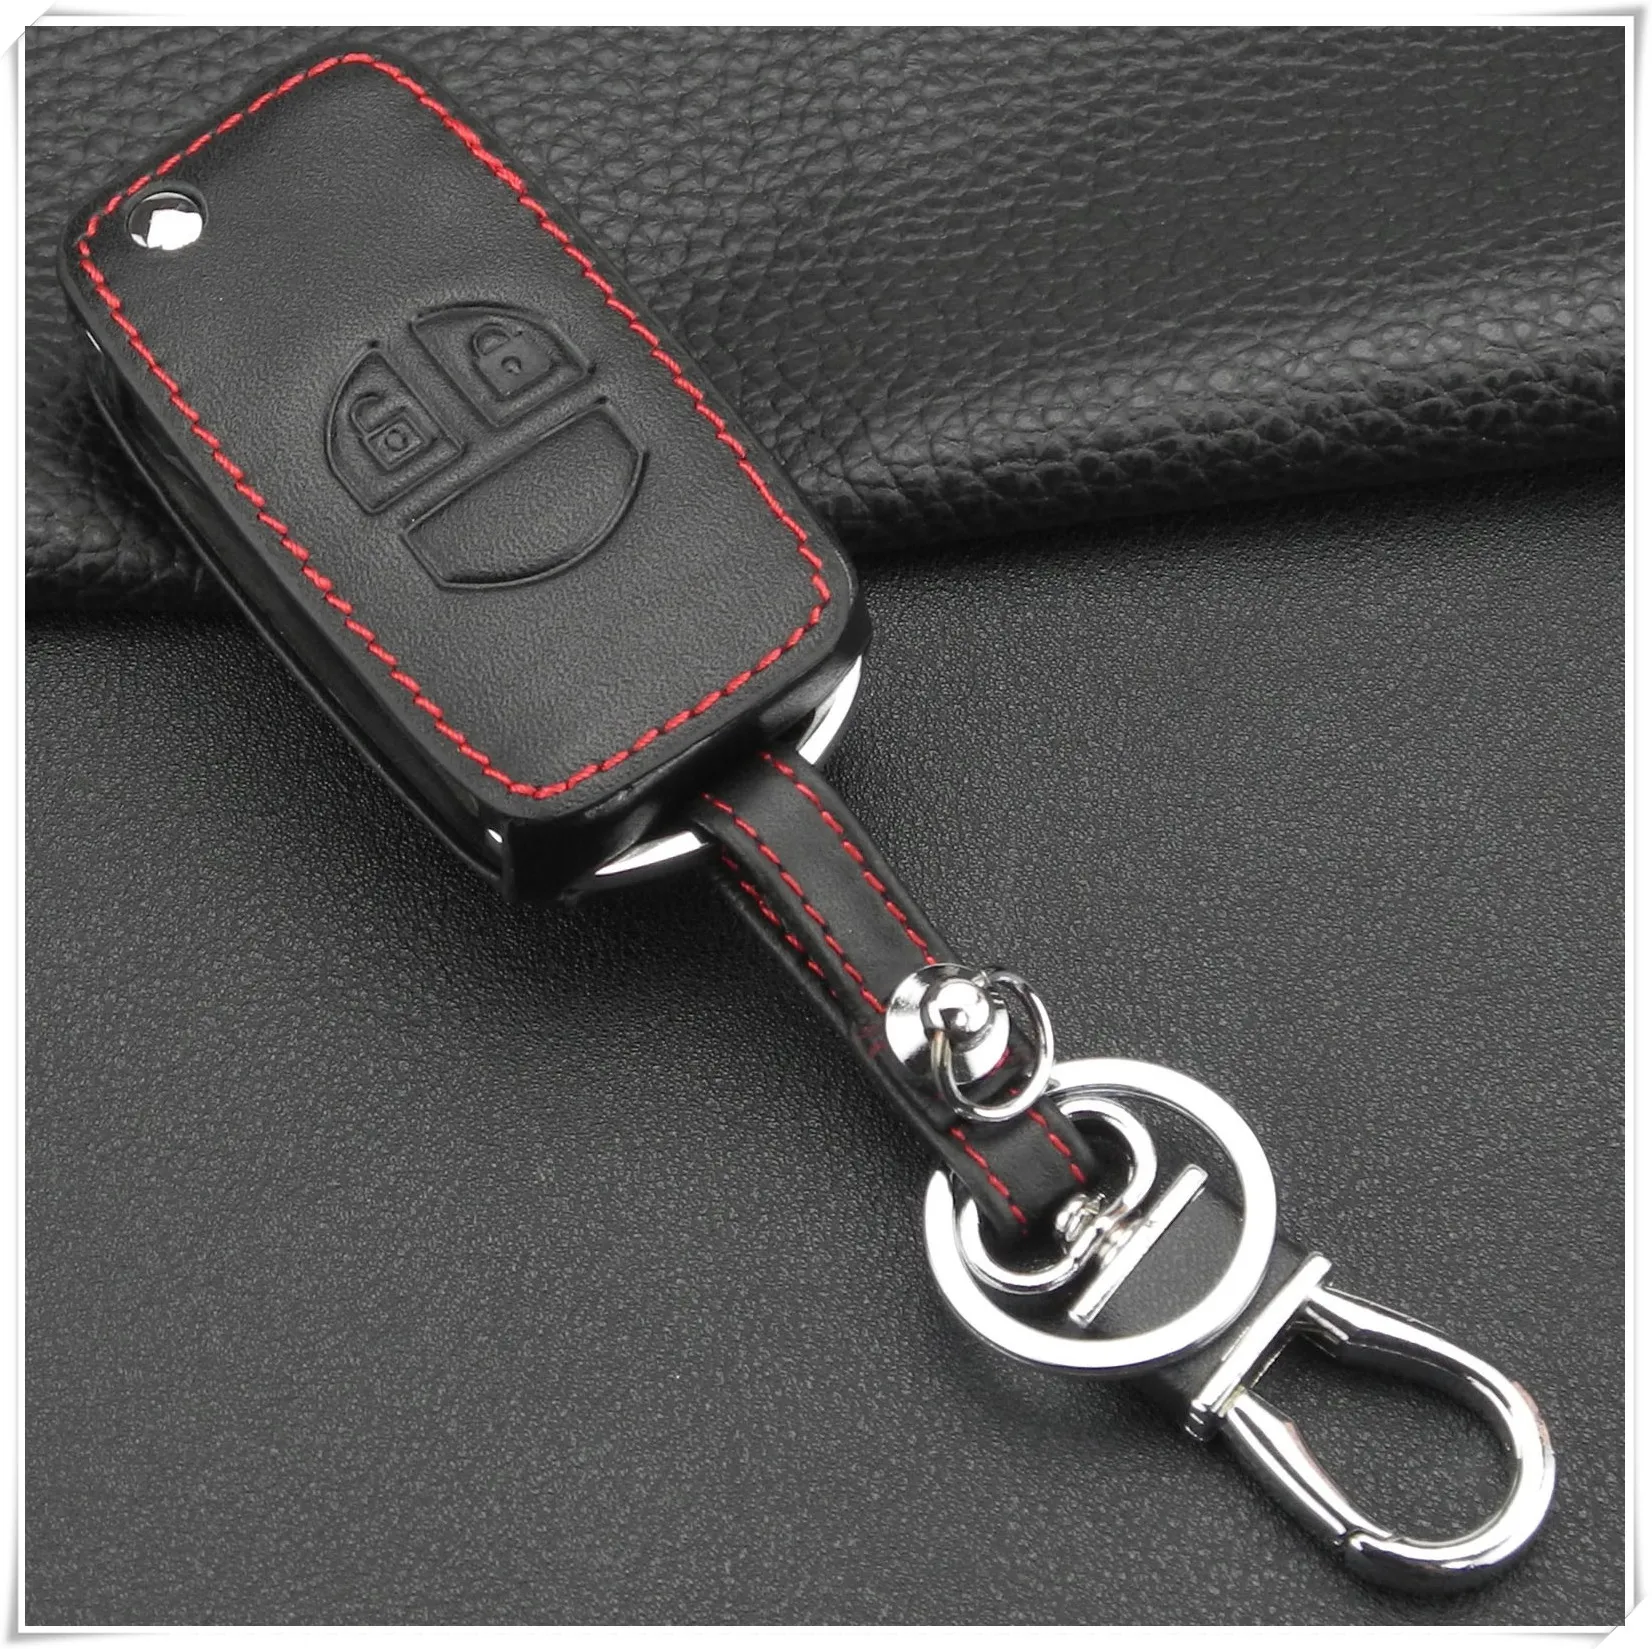 Jingyuqin 2 кнопки Кожаный Брелок дистанционного управления автомобильный ключ чехол держатель для Suzuki Swift Grage Vitara Alto брелок